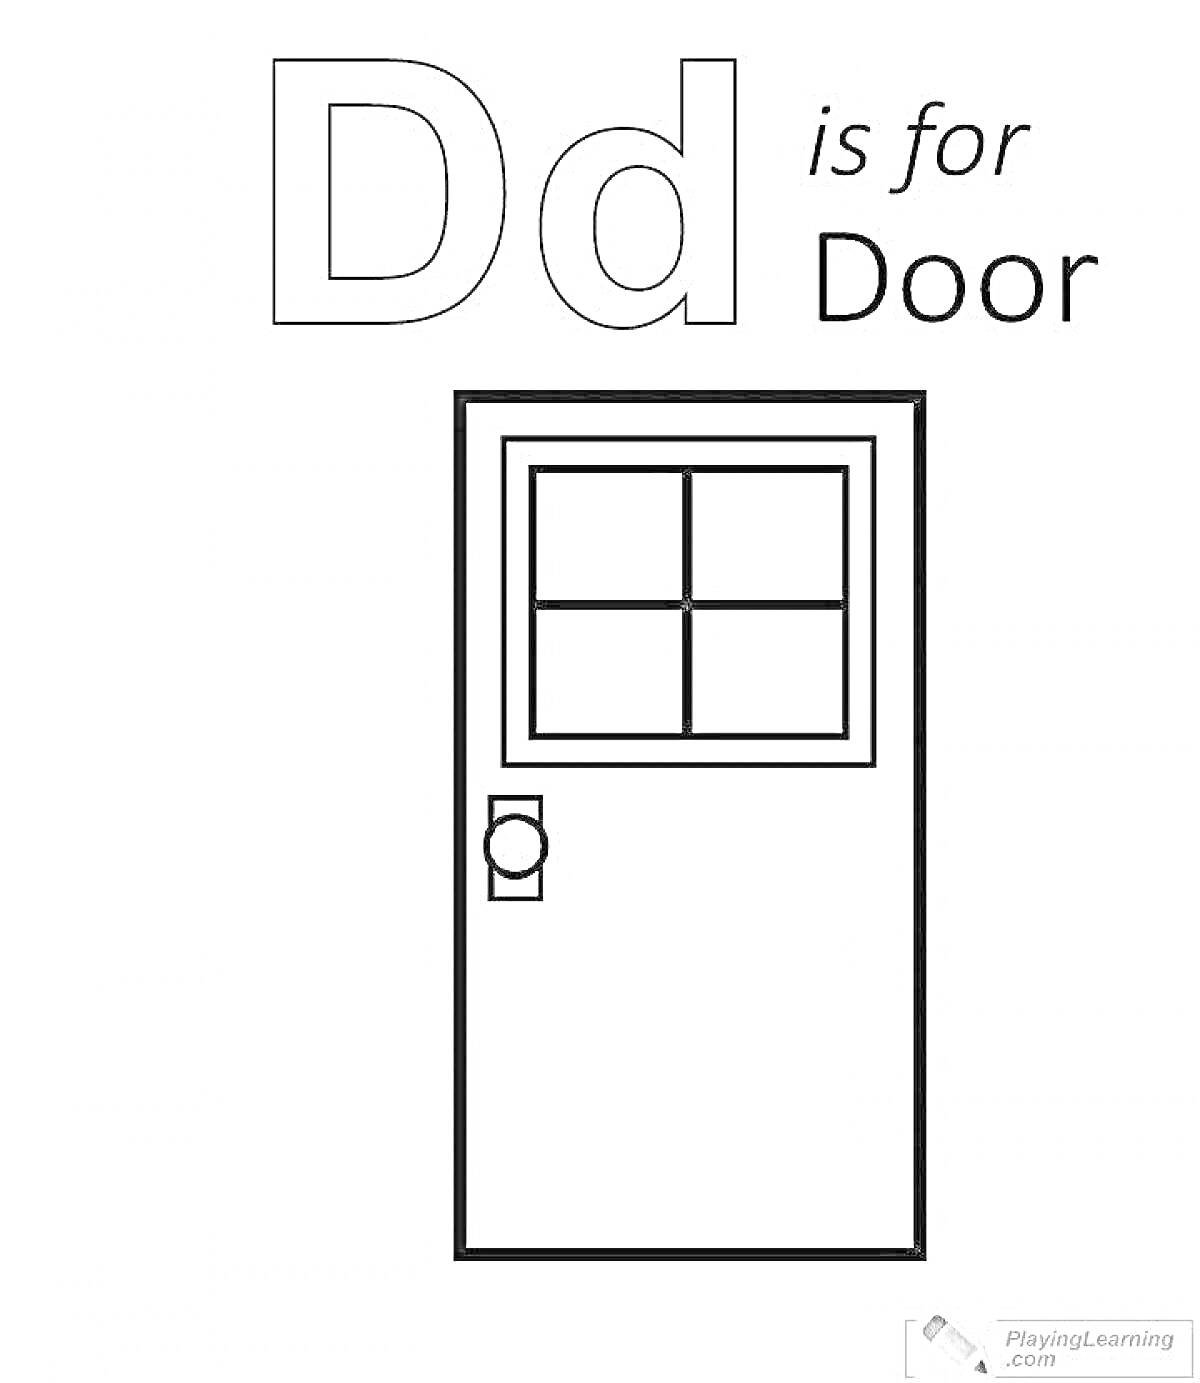 Раскраска Dd is for Door, дверь с маленьким окном в верхней части и ручкой